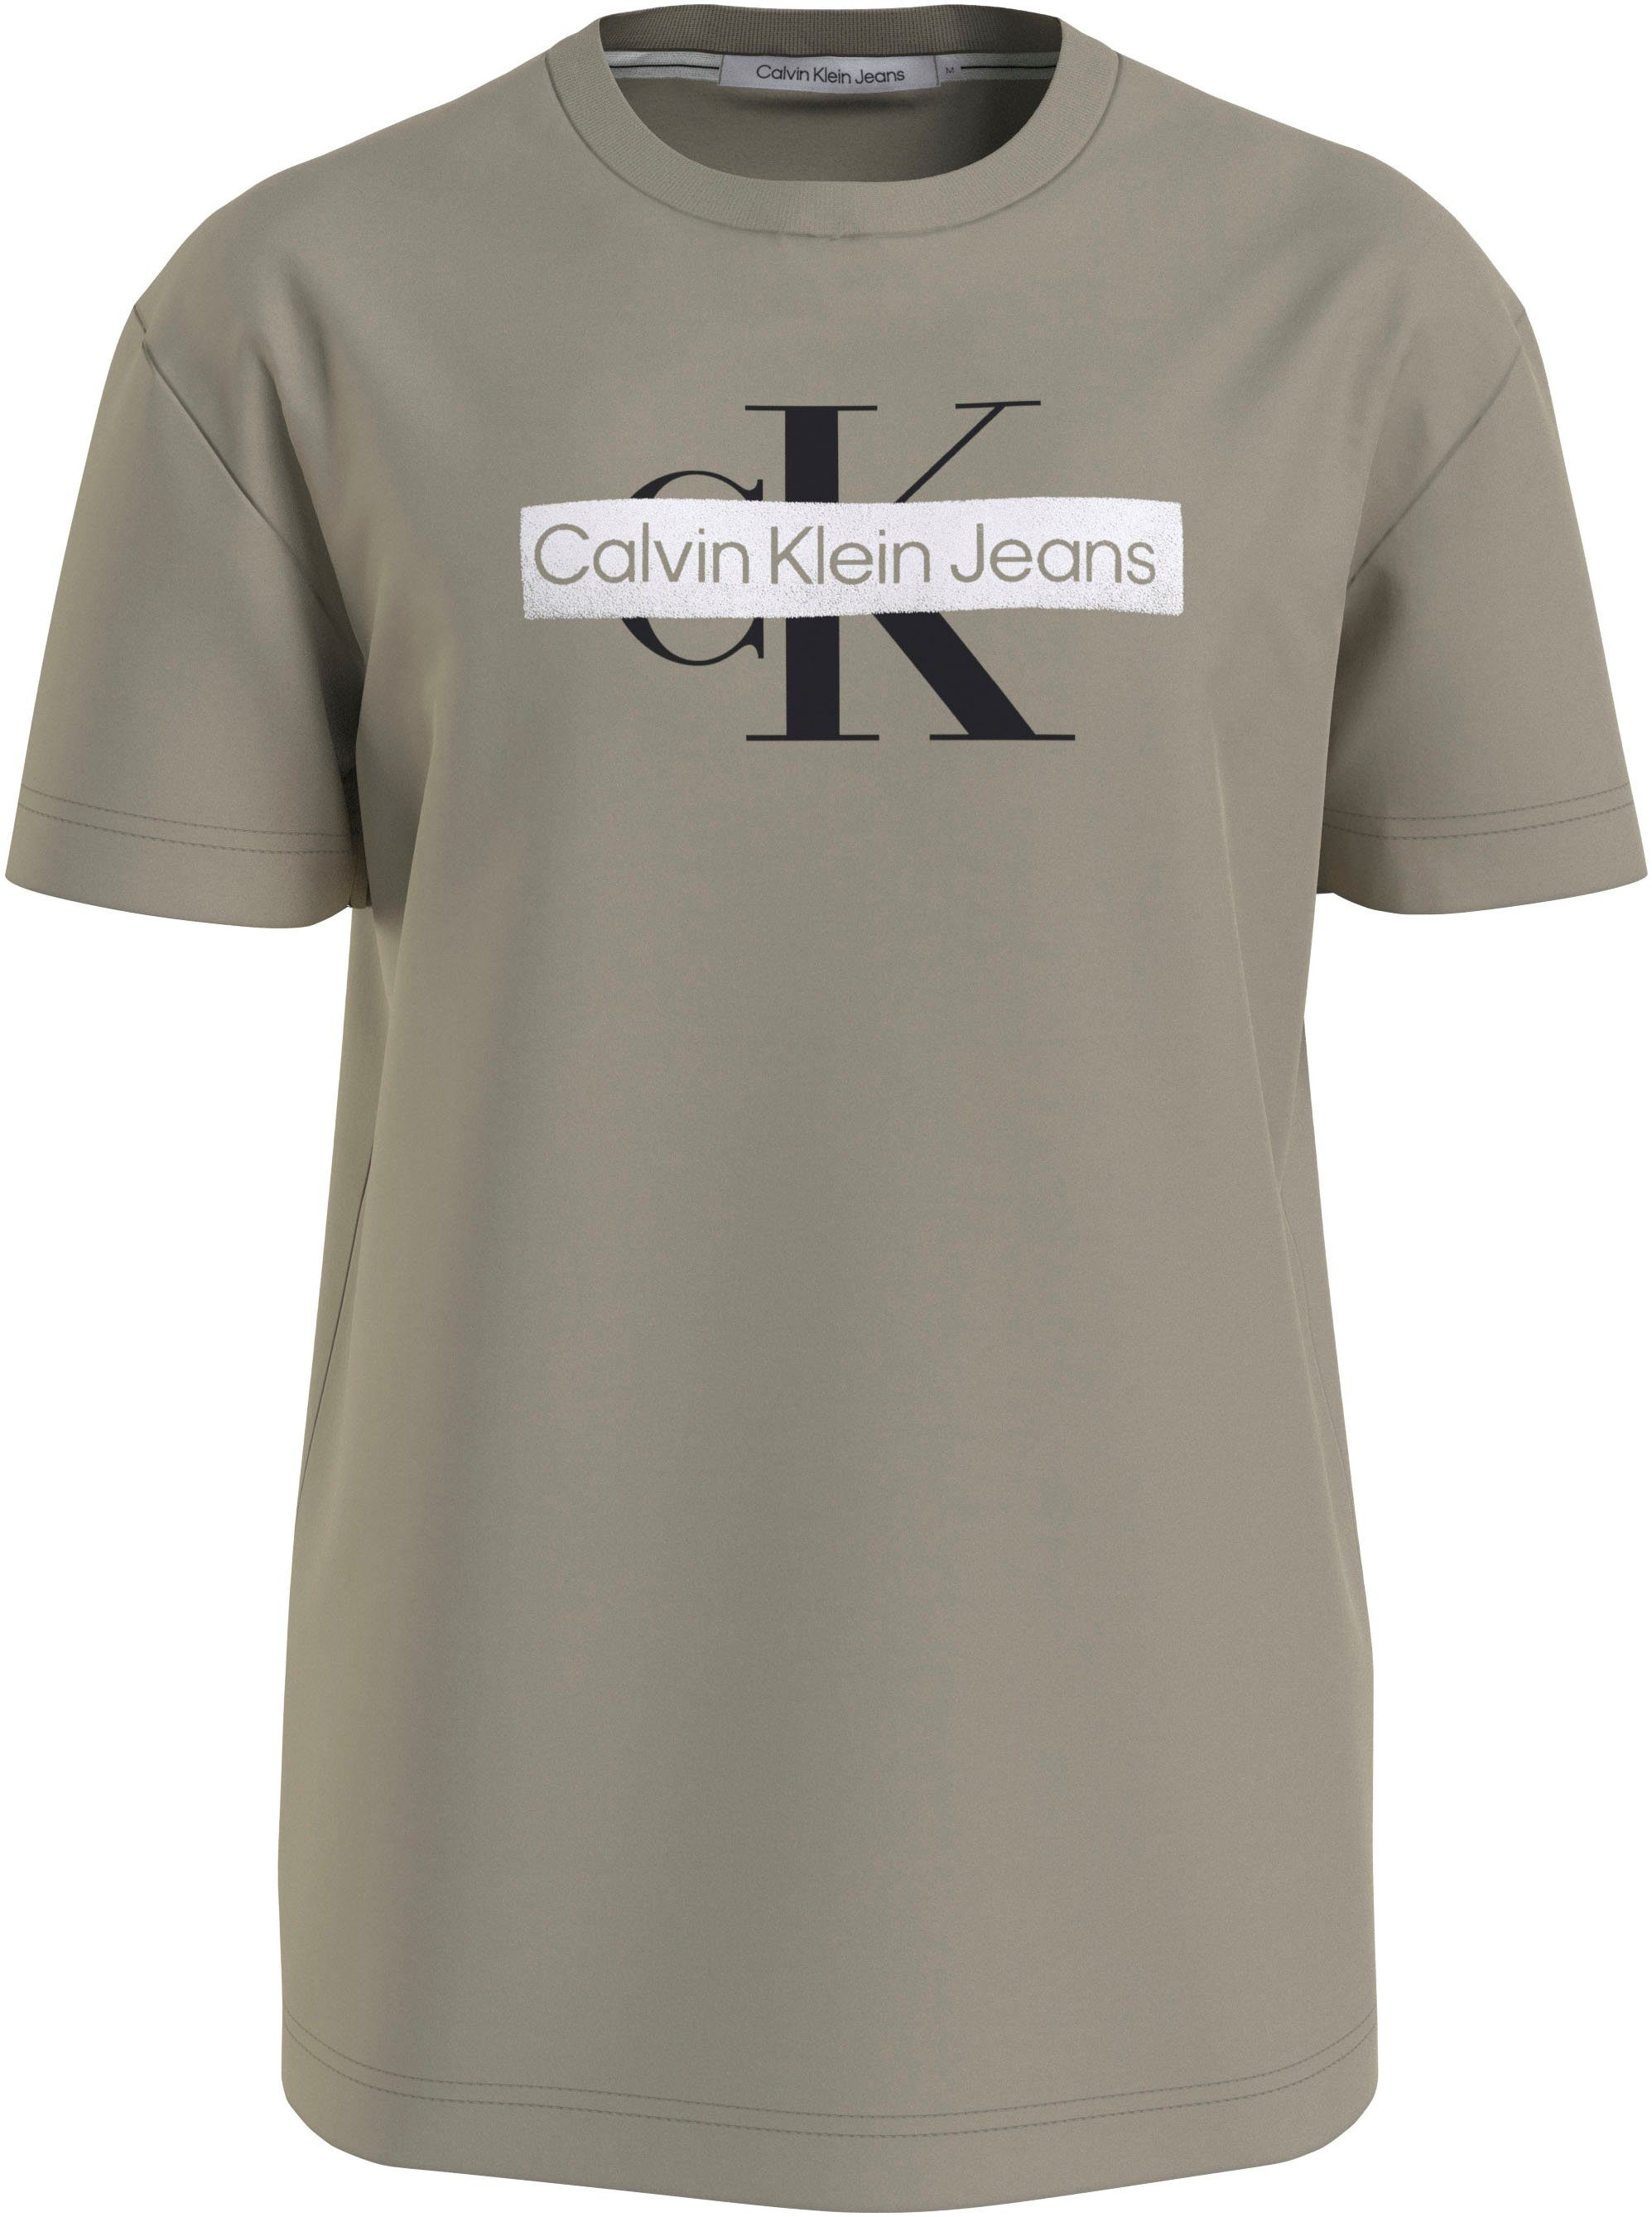 TEE beige Calvin Jeans MONOLOGO Klein T-Shirt STENCIL